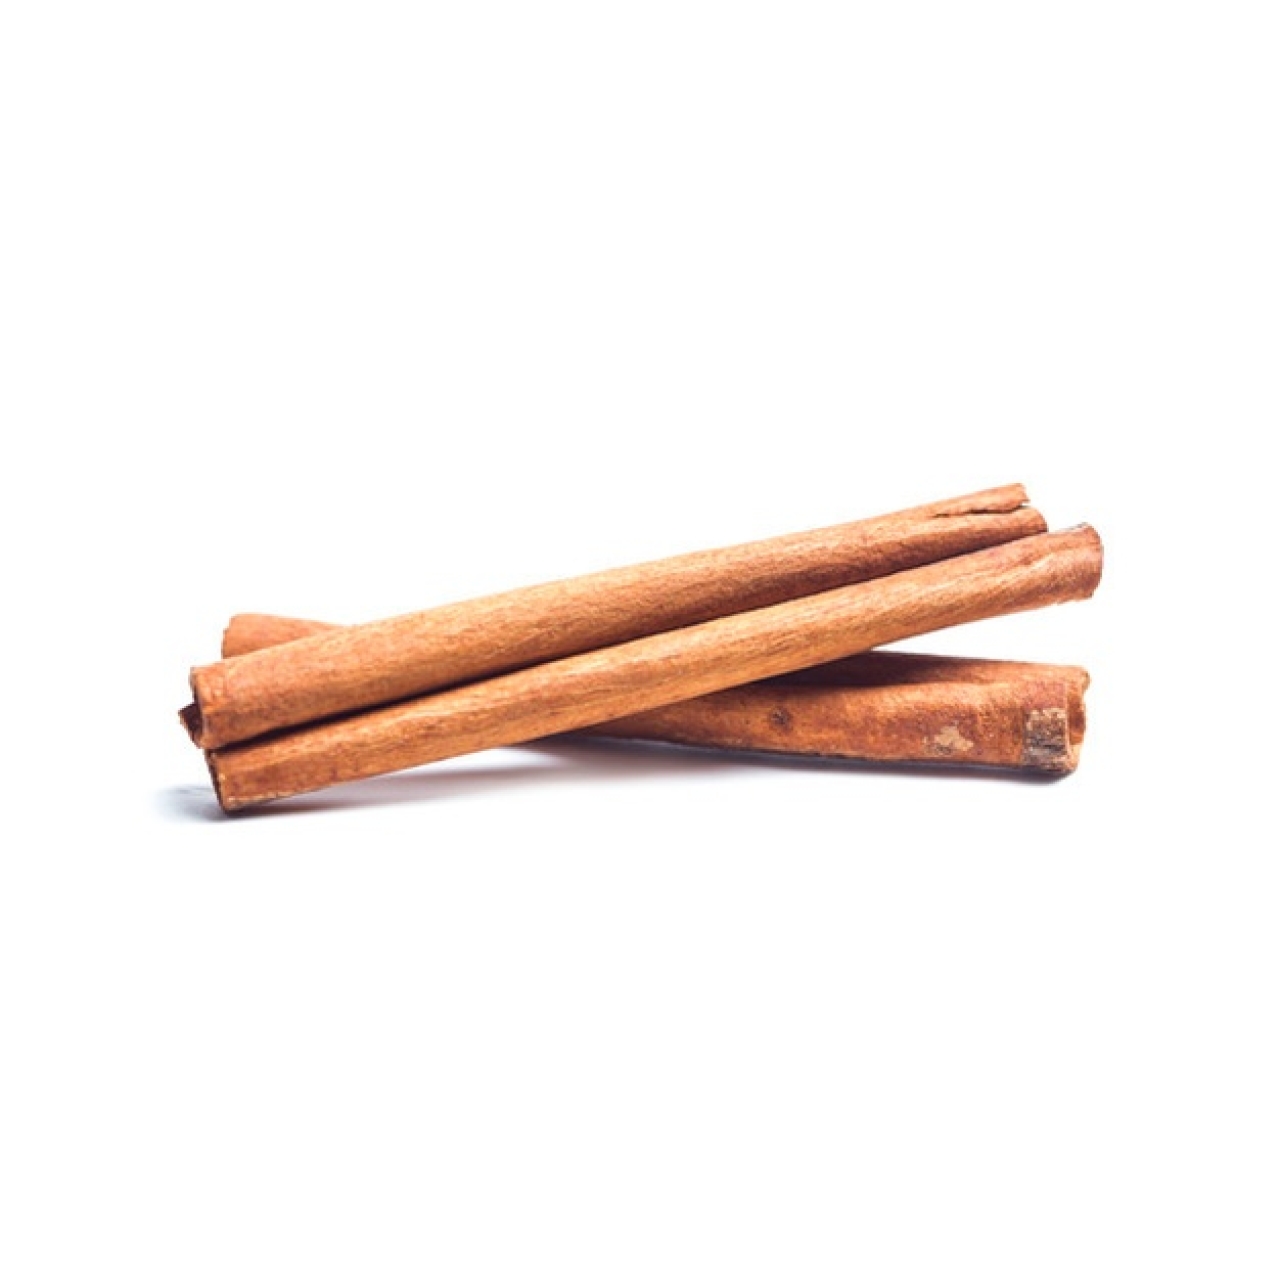 دارچین سیگاری ممتاز هندی 250 گرم وجیسنک